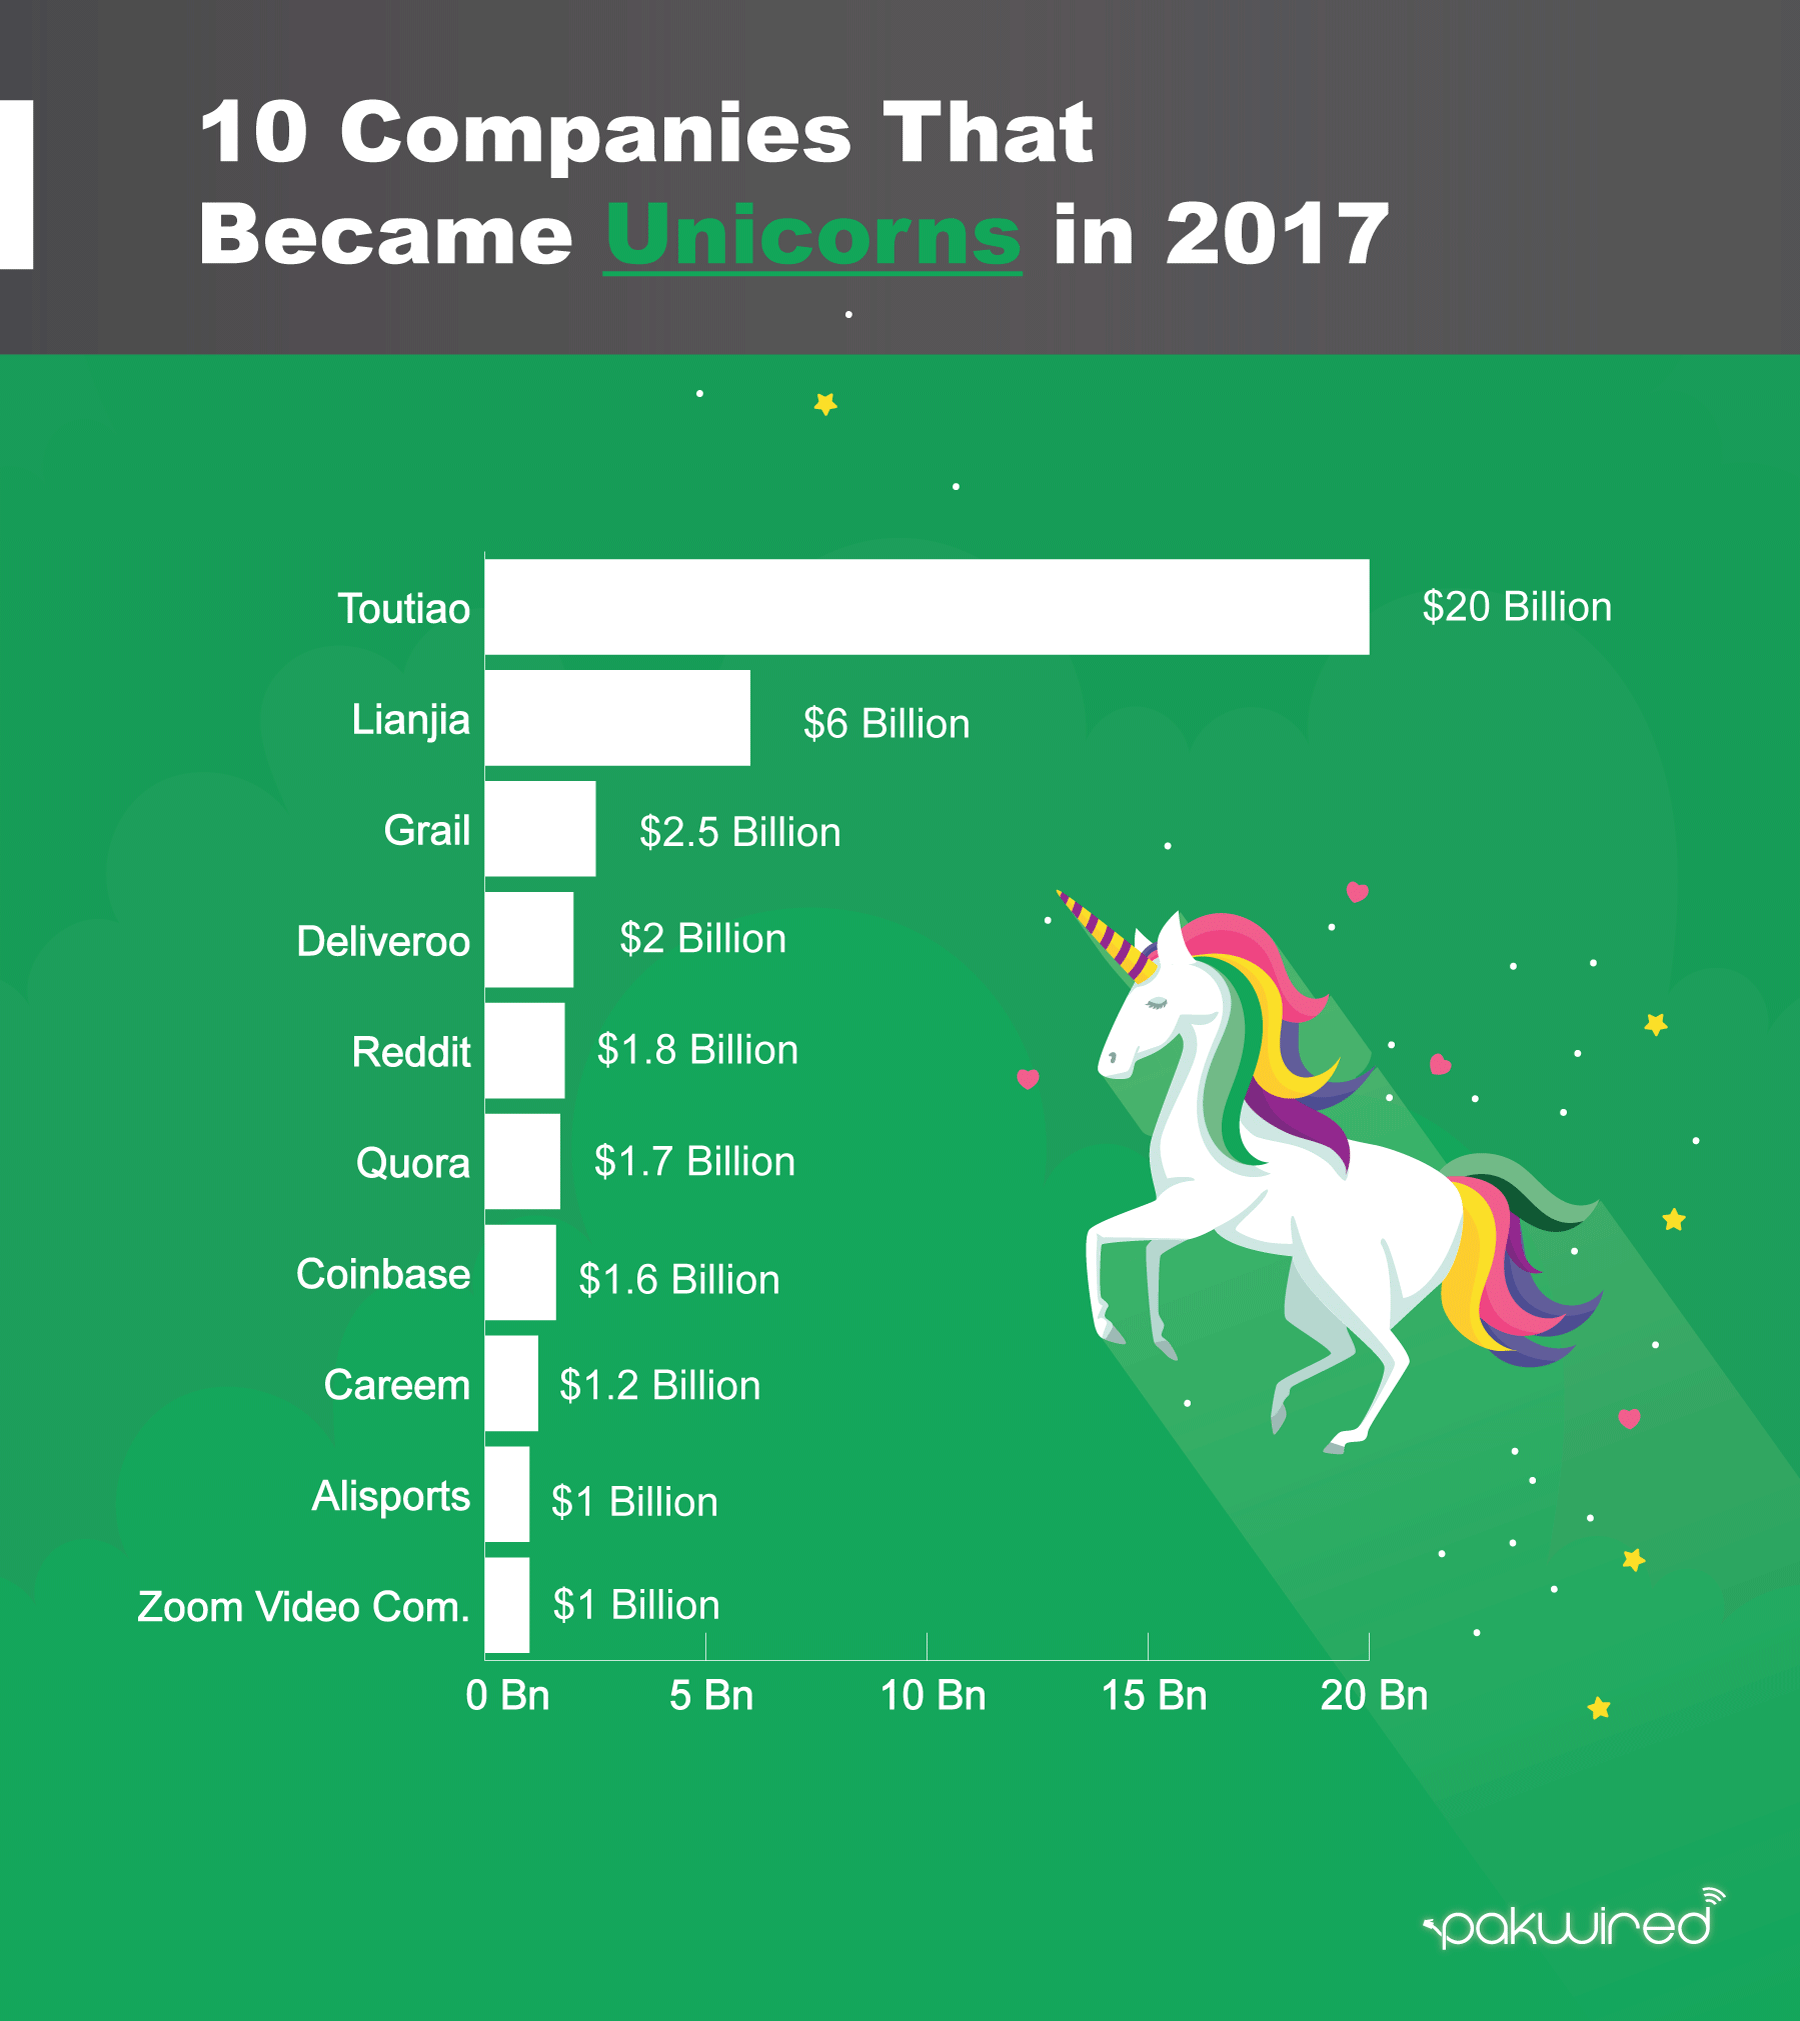 Unicorns-2017 - PakWired - Latest Startup and Technology News from Pakistan1800 x 2021